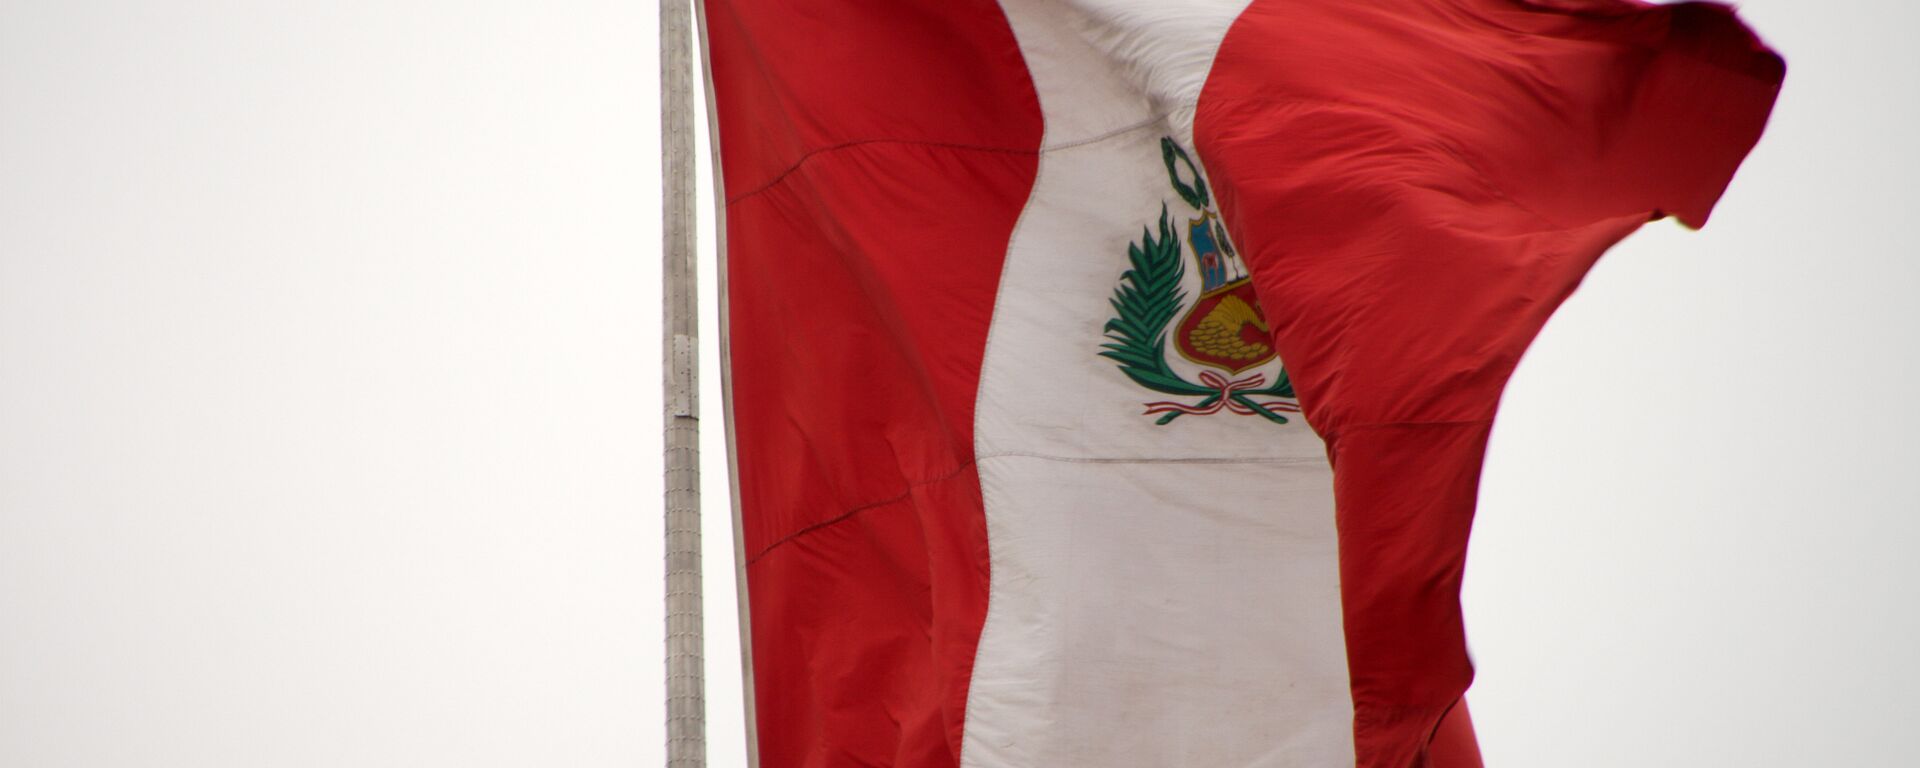 La bandera de Perú - Sputnik Mundo, 1920, 25.05.2021